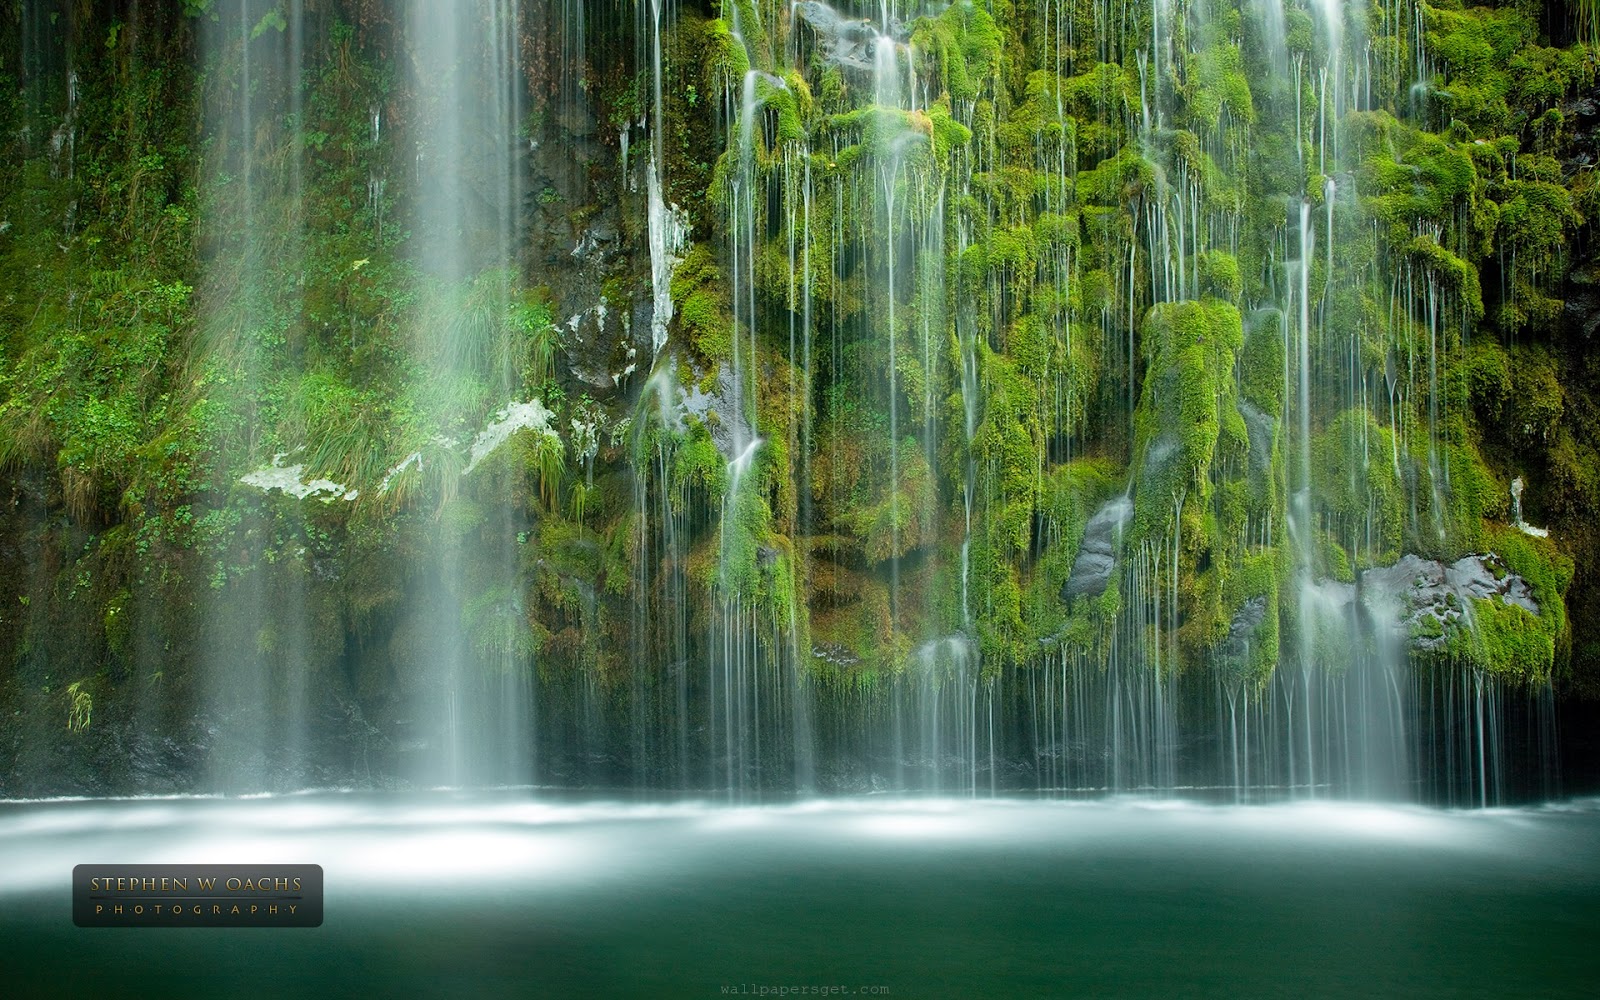 タミルナードゥ州の壁紙,滝,水資源,自然の風景,水域,自然